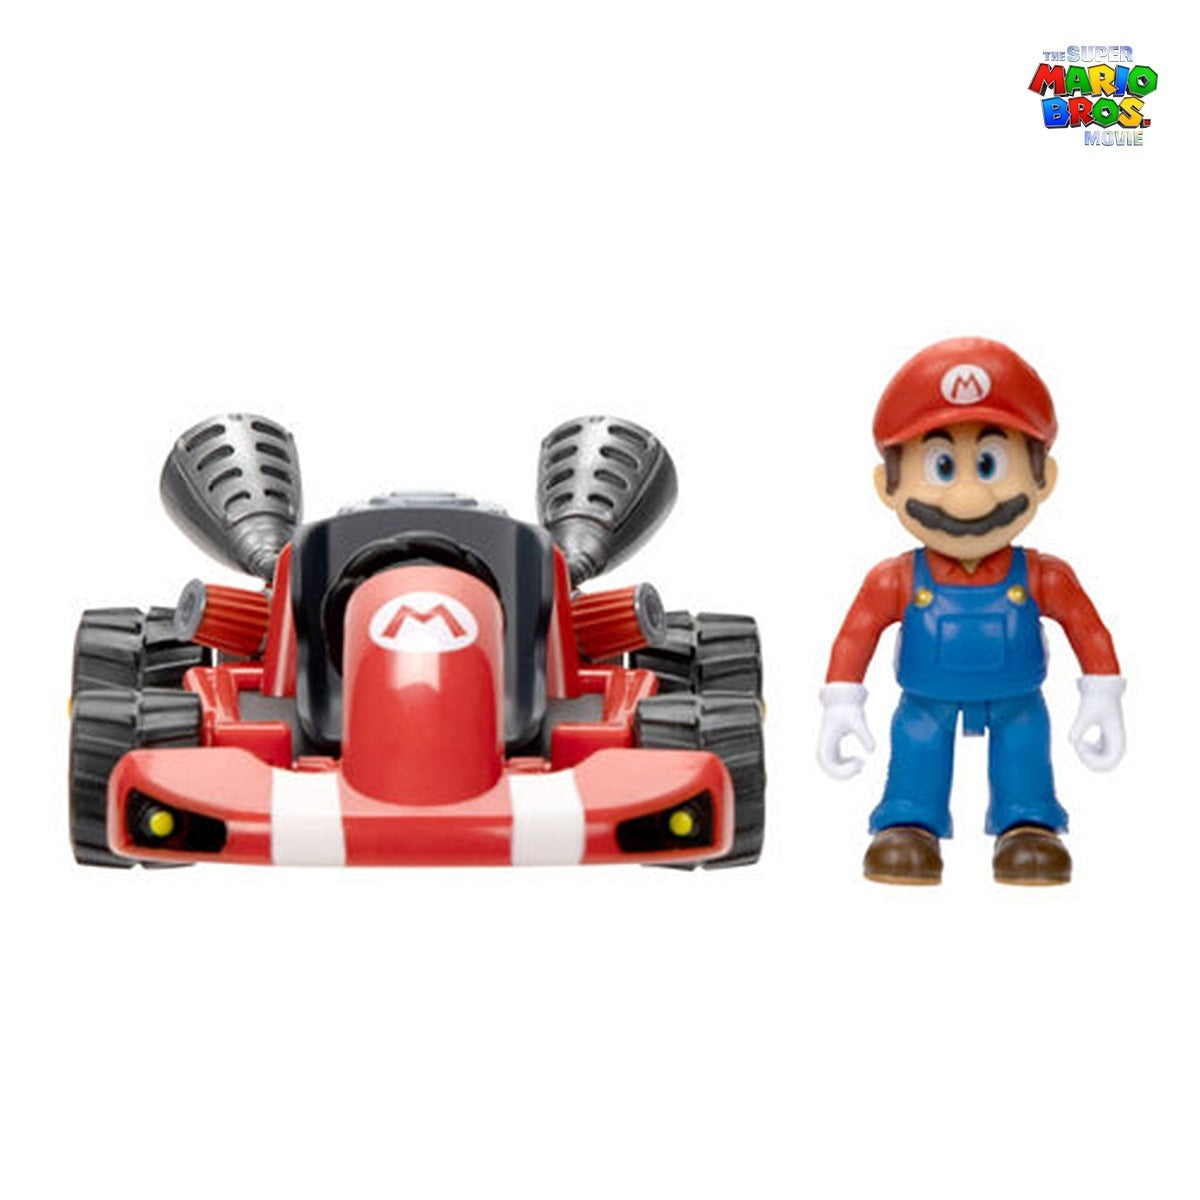 Set de Juguetes Mario Kart Figuras Articuladas y Carritos